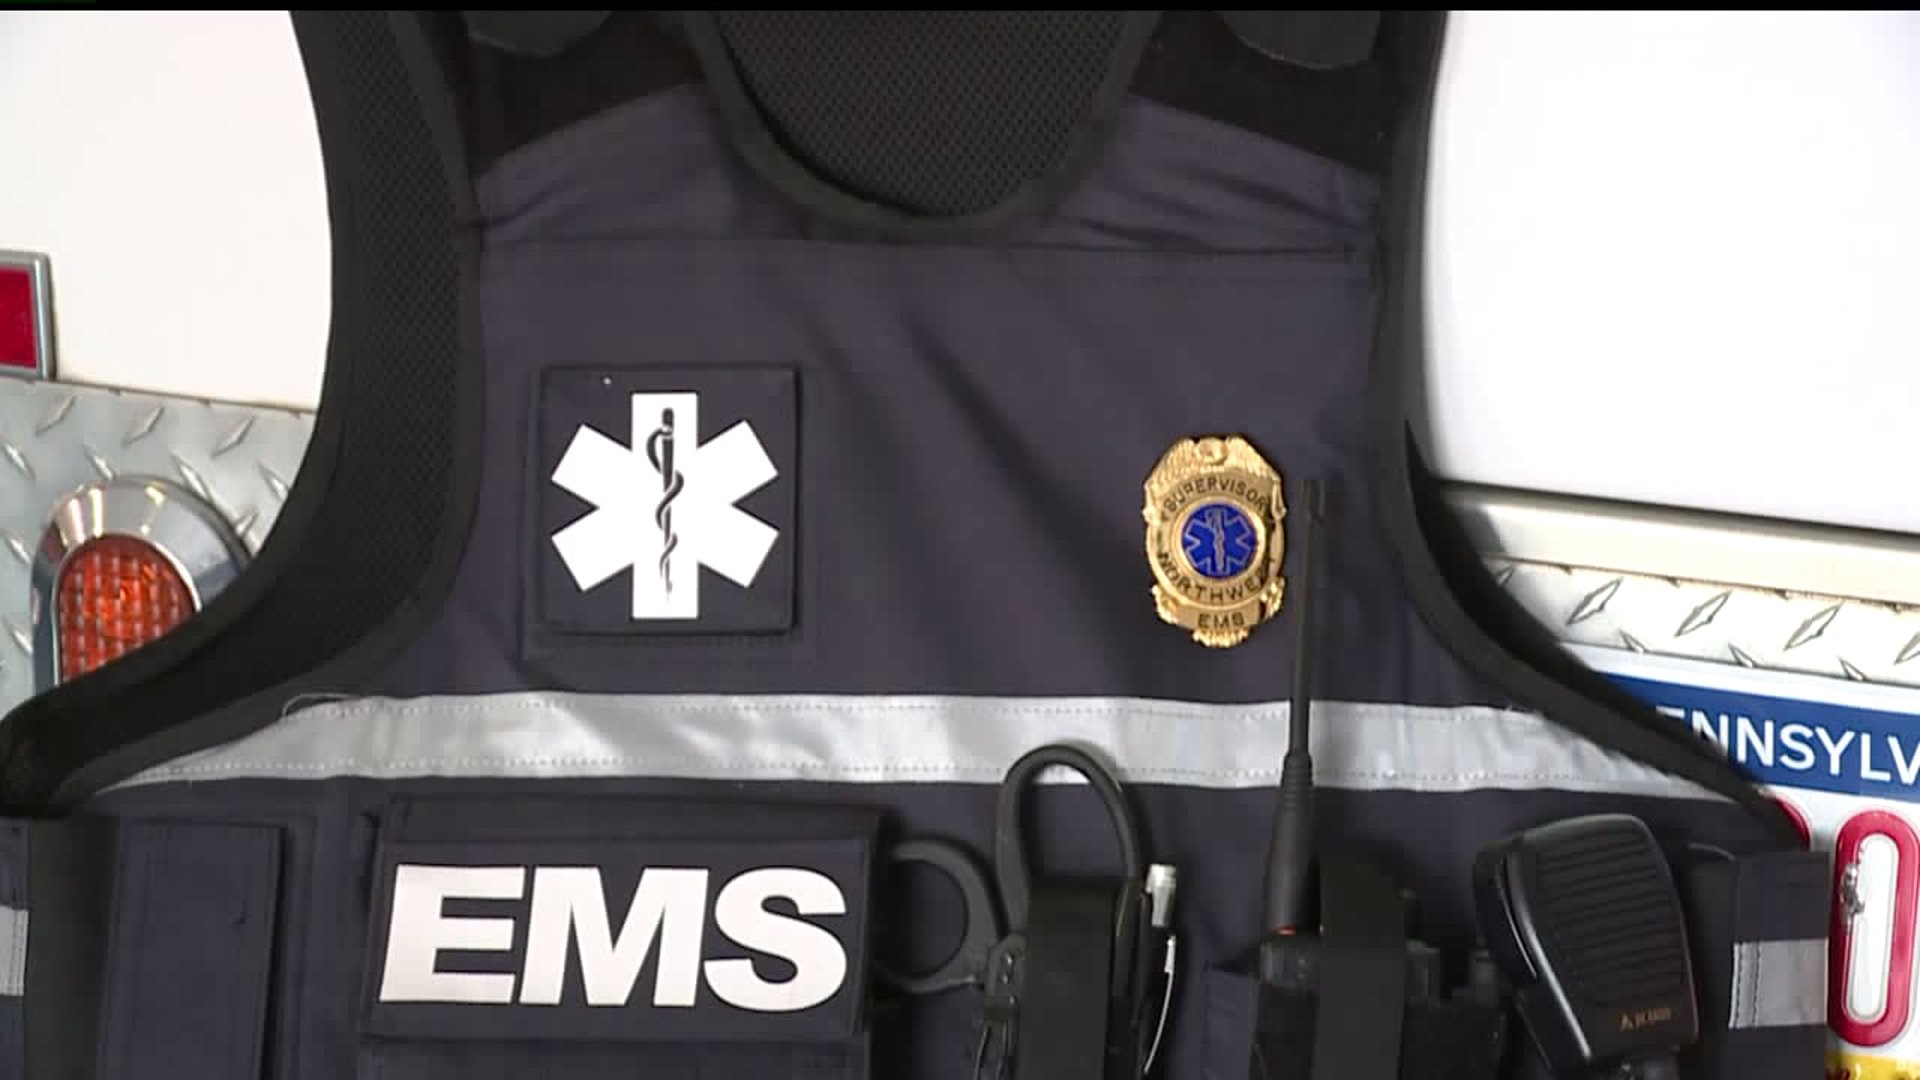 Northwest EMS seeks funding for bulletproof vests